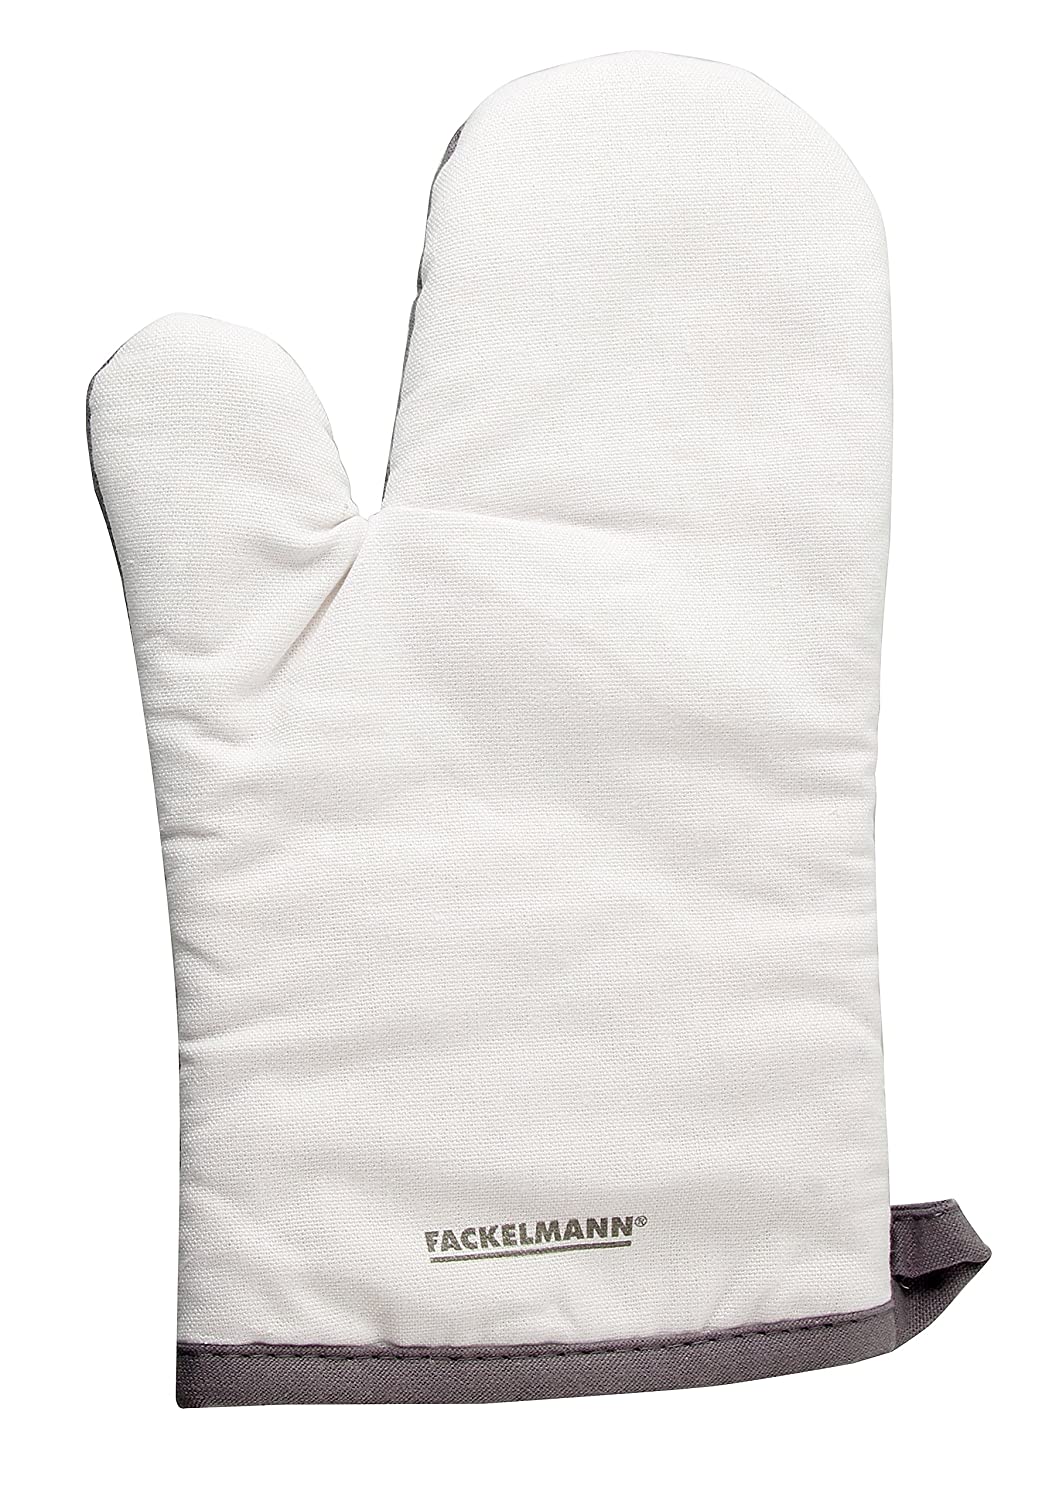 Topfhandschuh, Ofenhandschuh aus Baumwolle, für Links- und Rechtshänder geeignet, in klassischem Design (Farbe: Weiß/Grau), Menge: 1 Stück